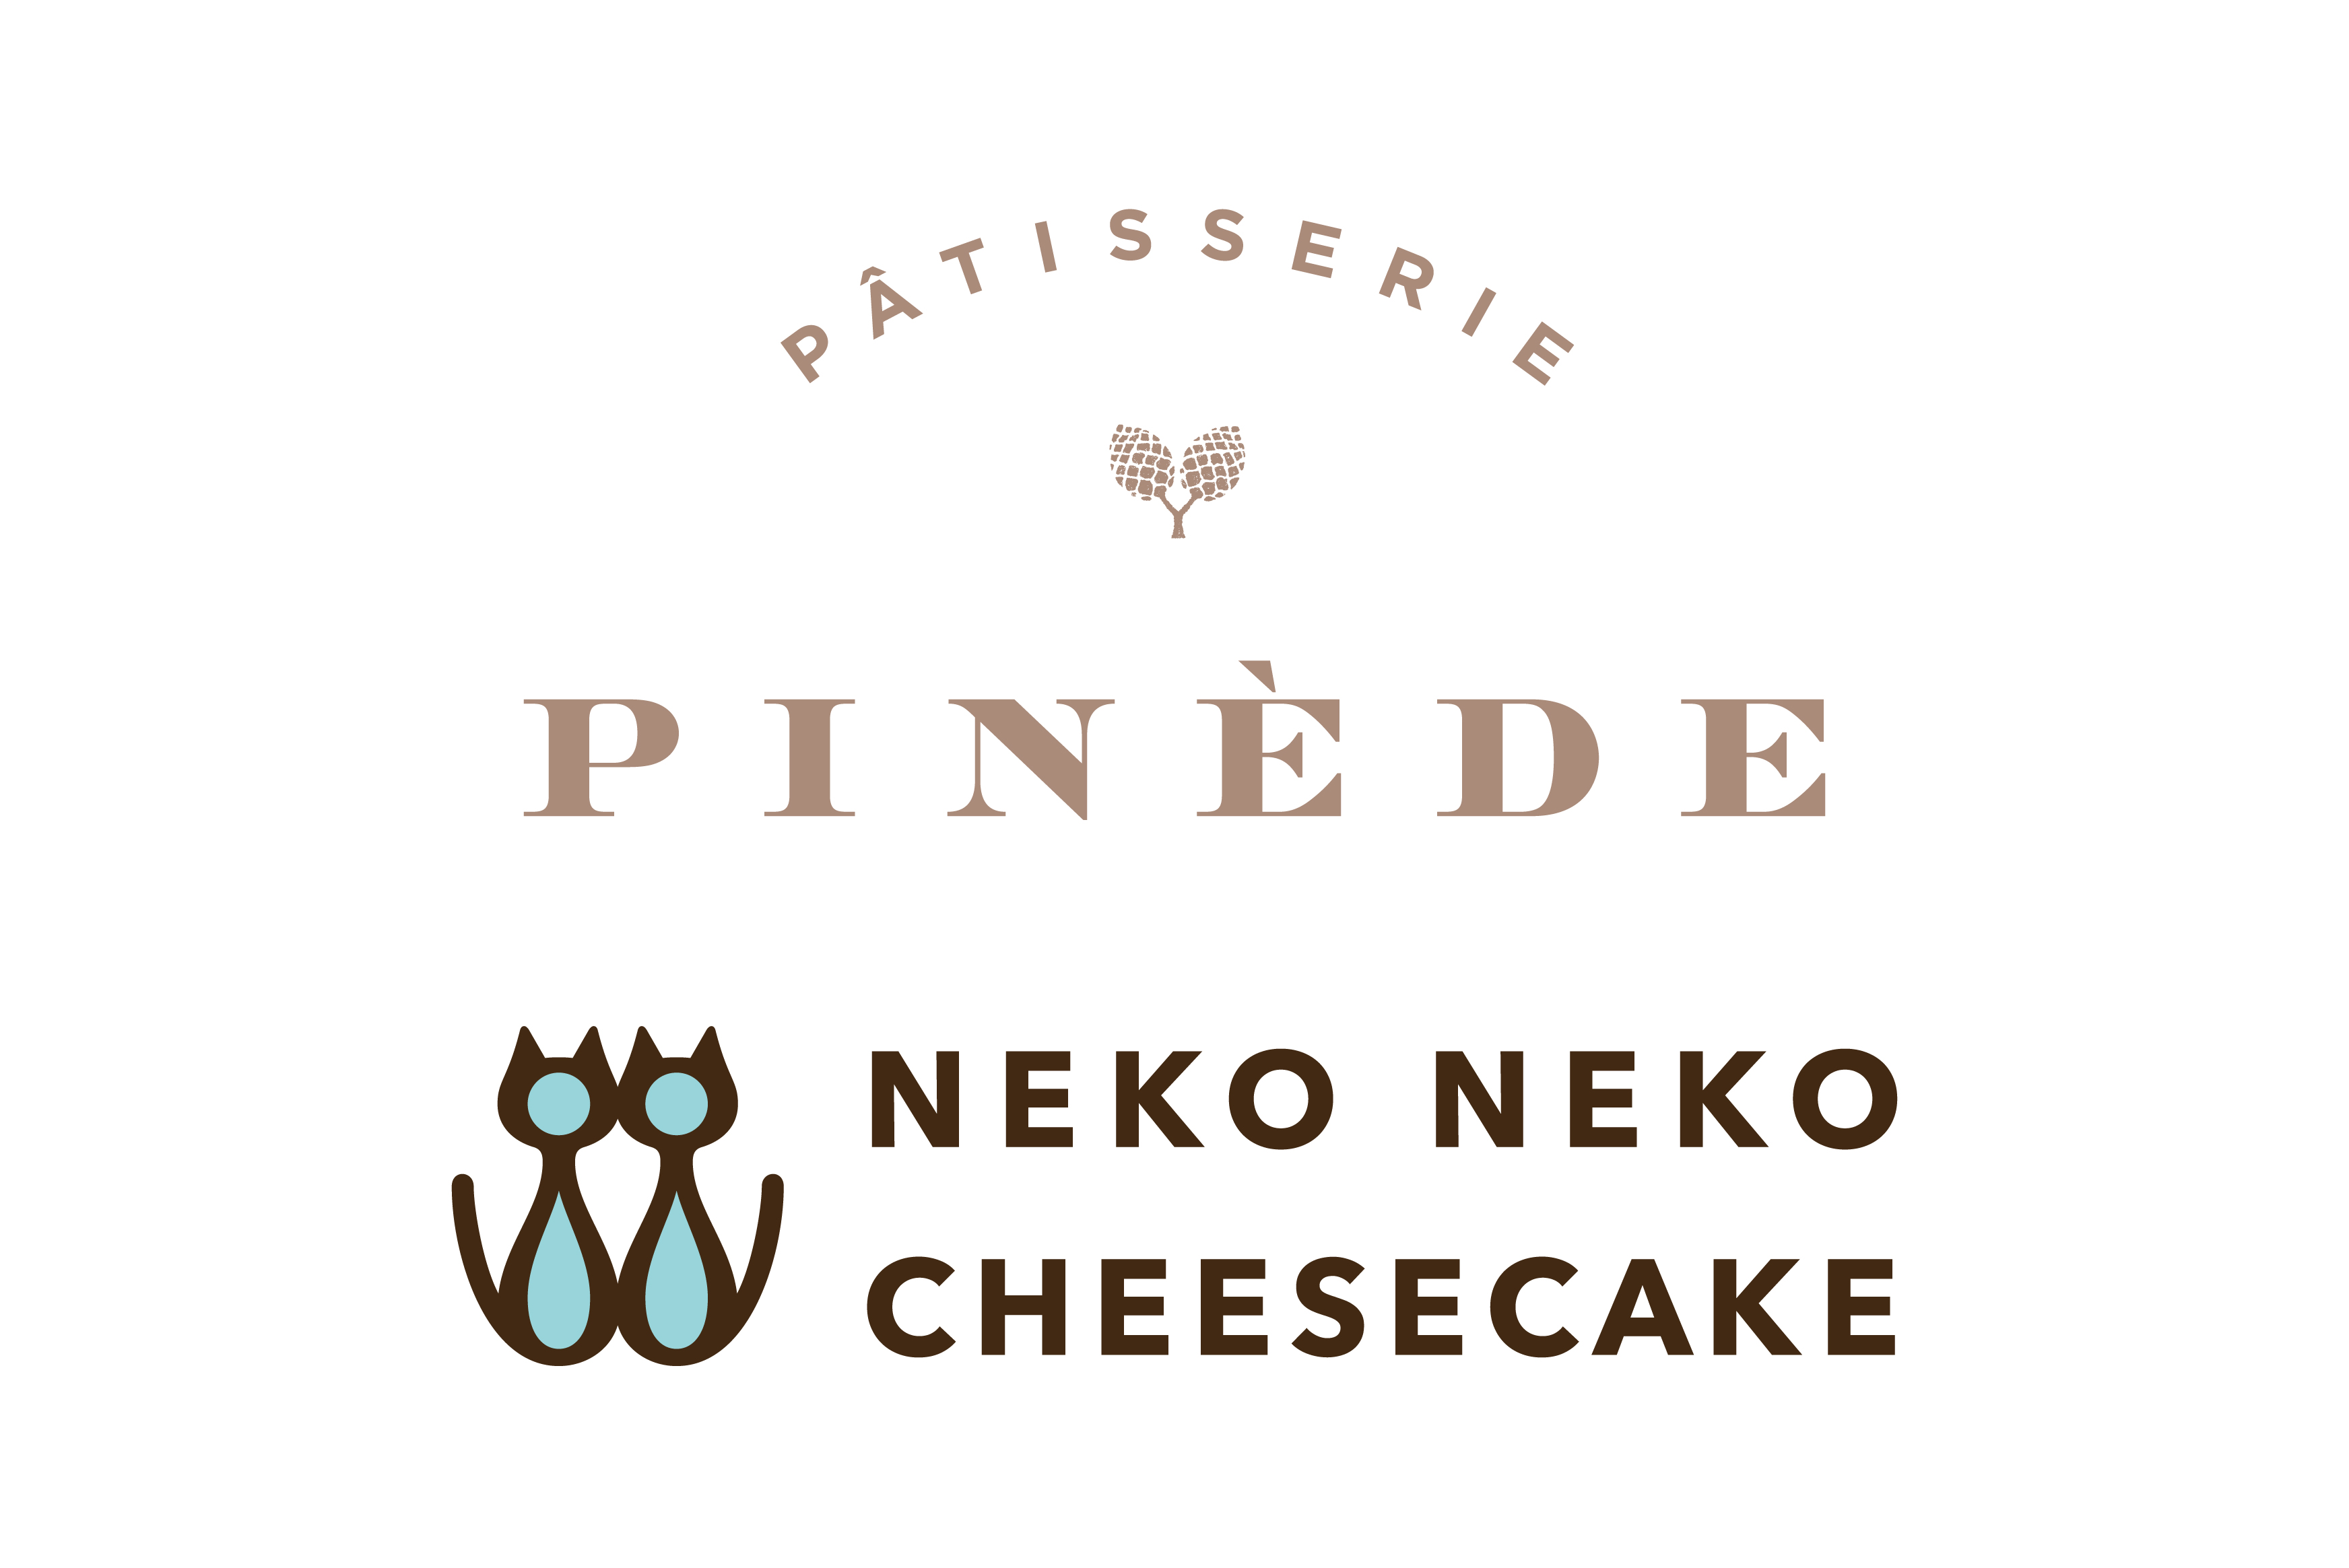 新規オープン スイーツショップ Patisserie Pinede パティスリー ピネード およびねこの形のチーズケーキ専門店 ねこねこチーズケーキ が愛知県に登場 株式会社オールハーツ カンパニーのプレスリリース